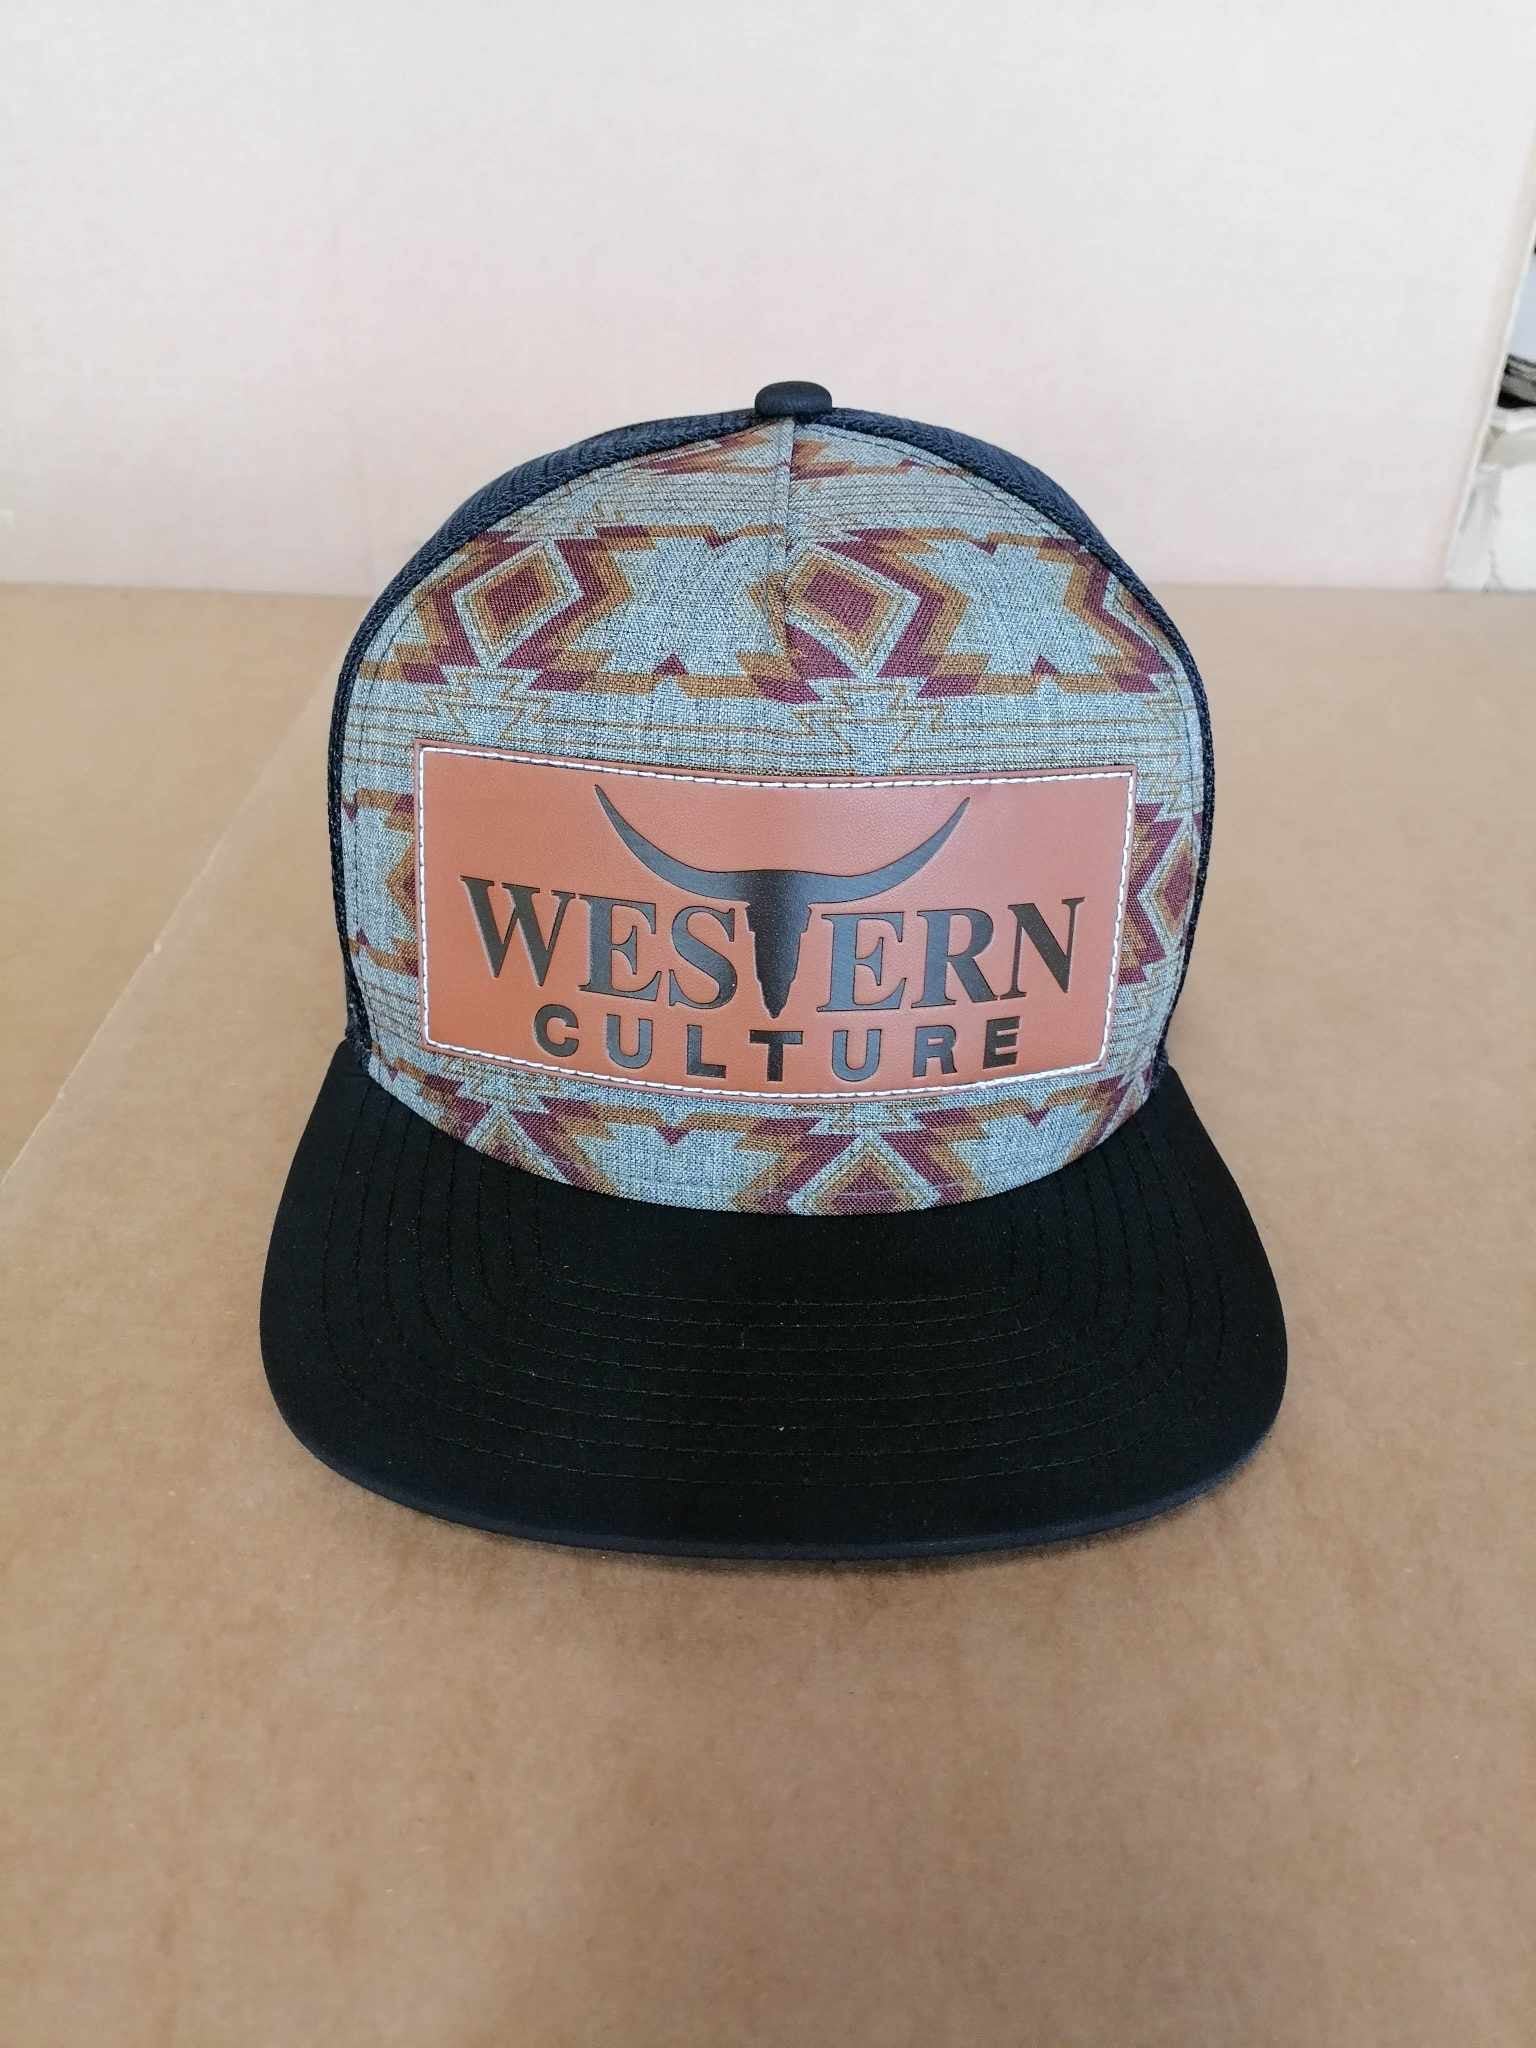 Western Culture Trucker Cap-Western Culture Leather